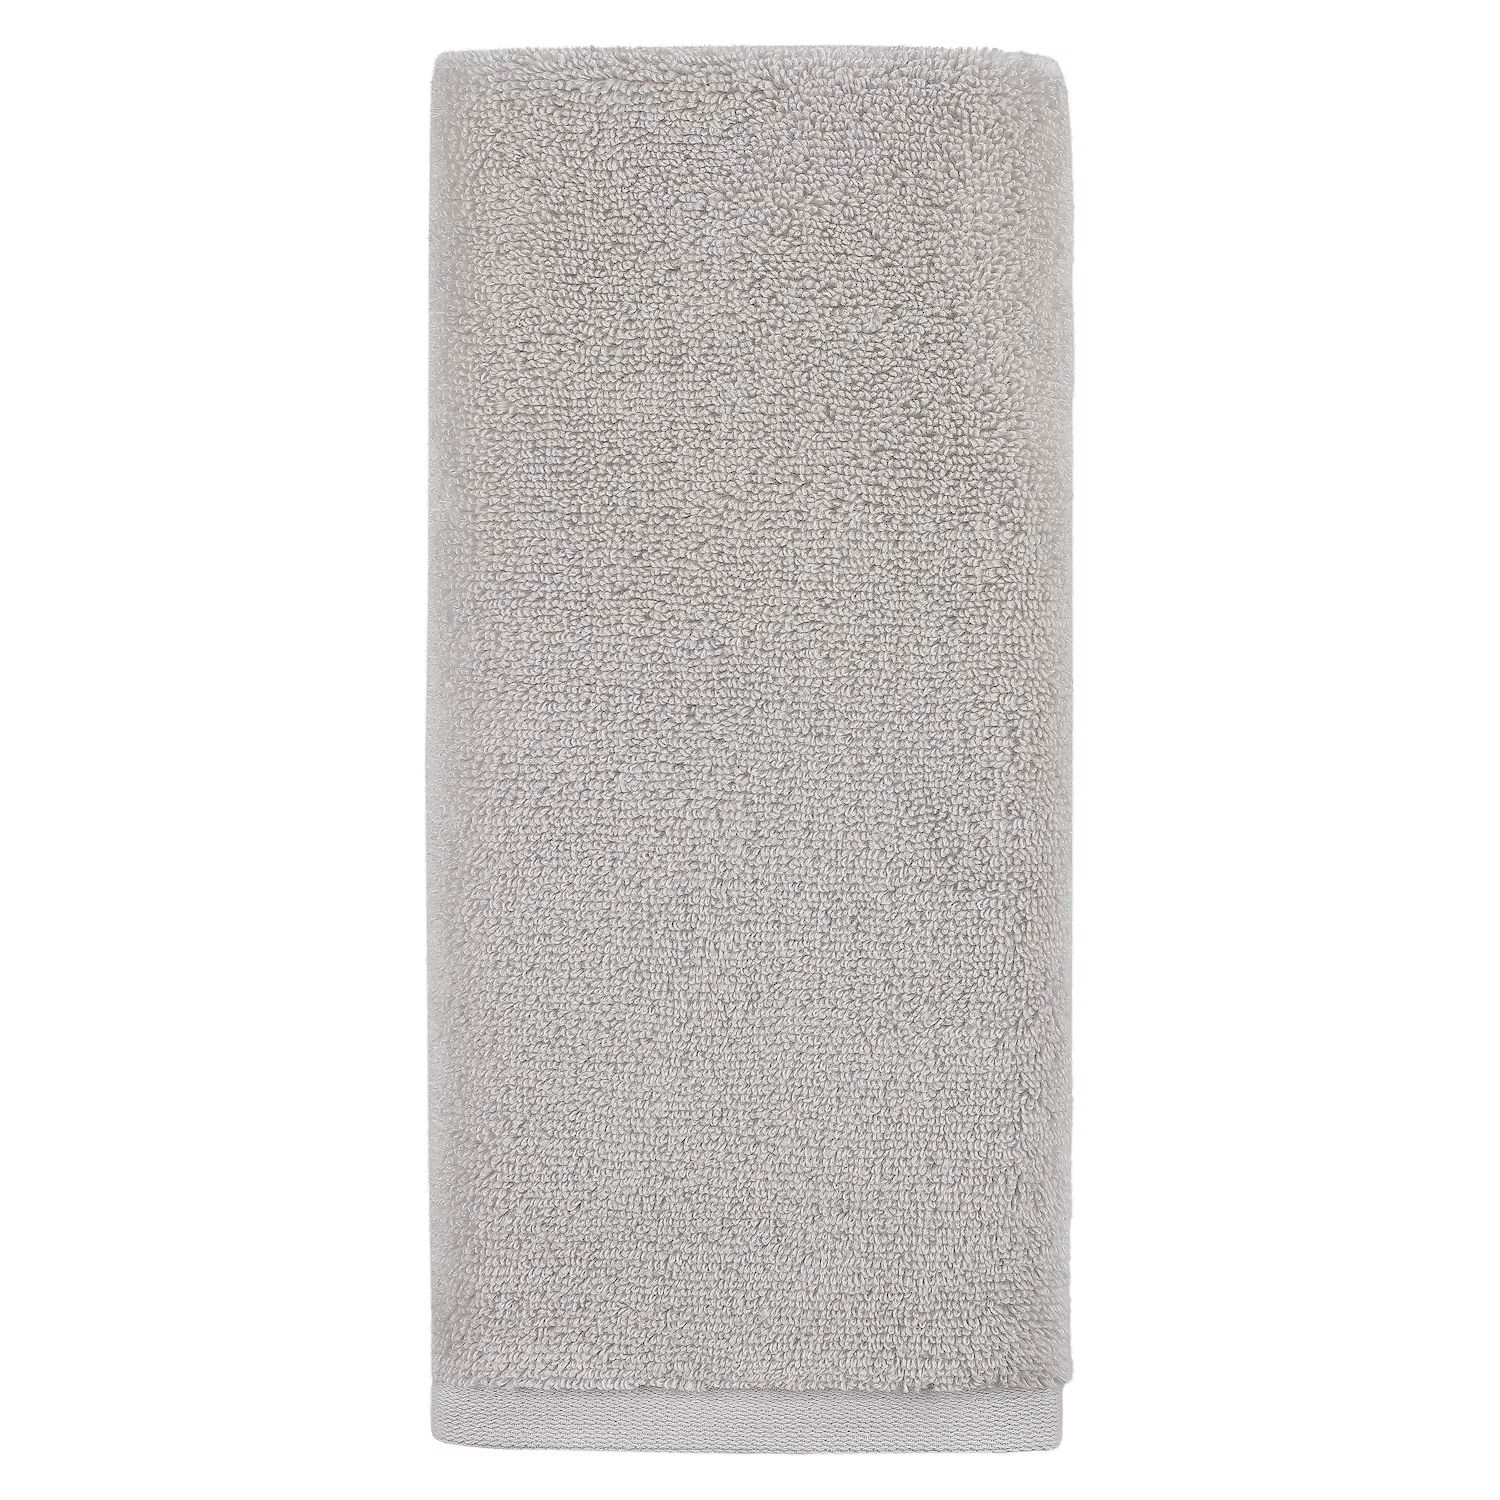 Супермягкое банное полотенце Sonoma Goods For Life, белый платье megapolis сиэтл